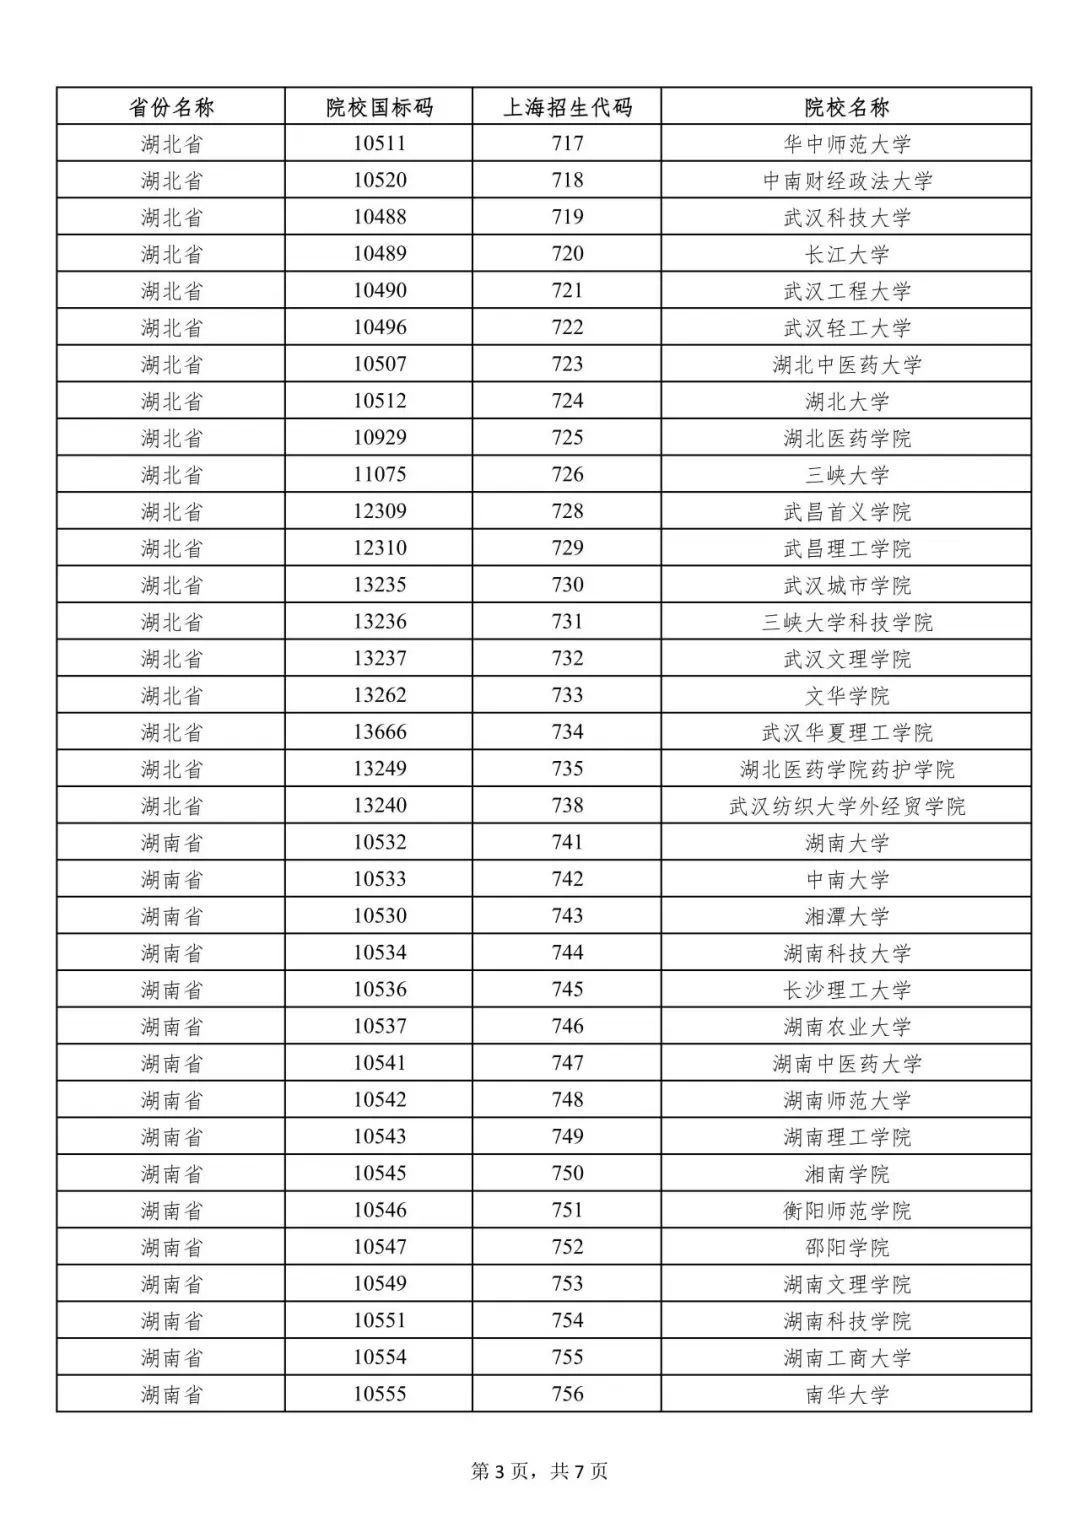 上海市一次性经济补贴发放范围的外省市院校名单